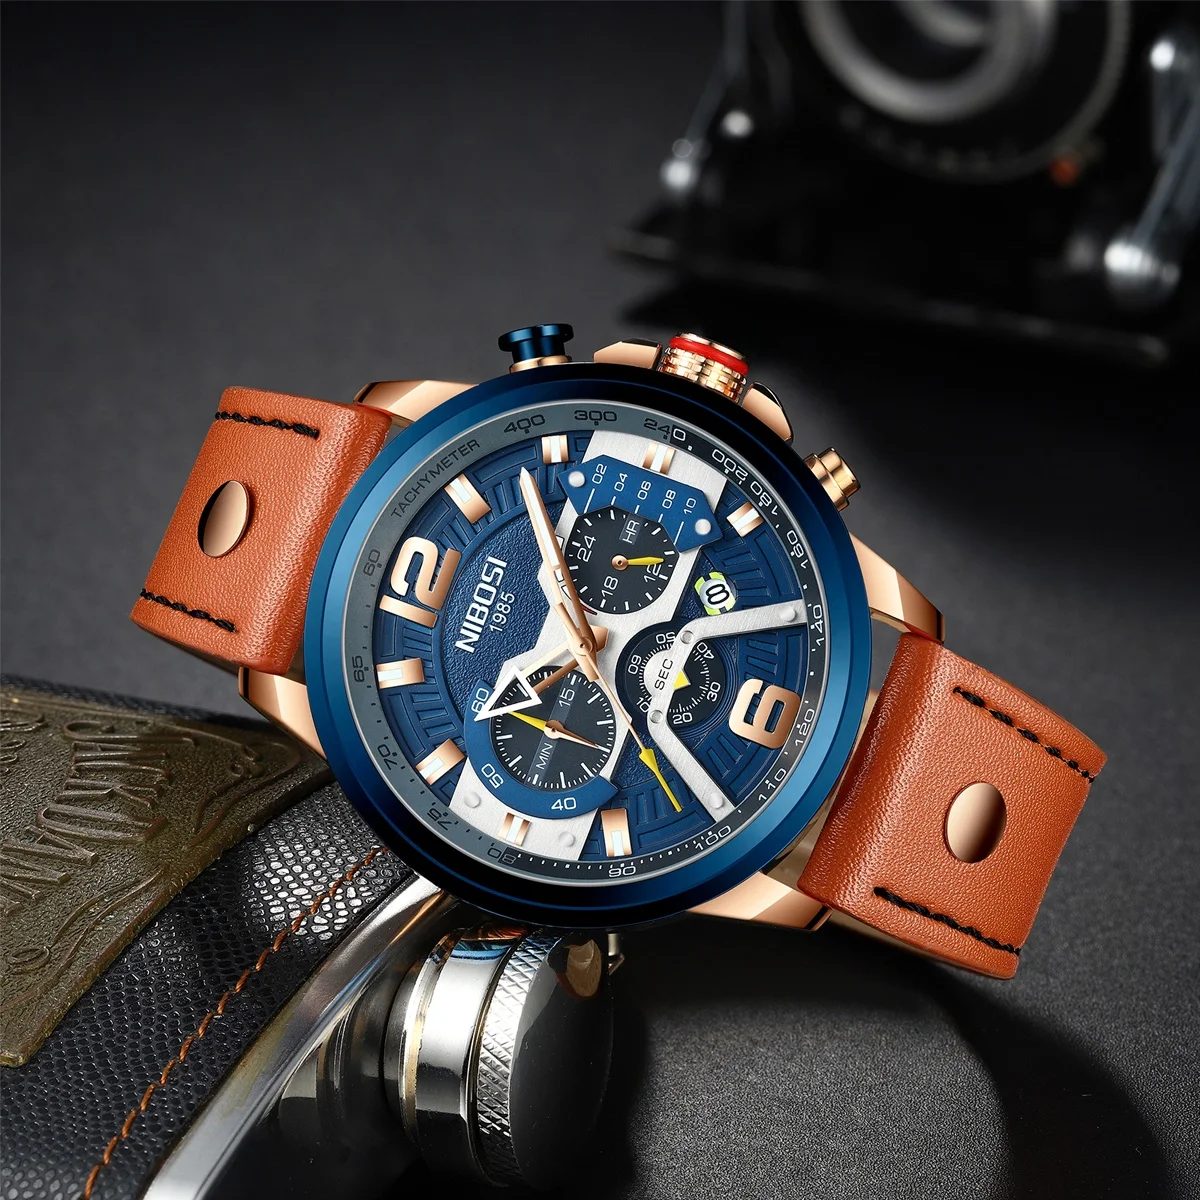  Повседневные спортивные мужские часы NIBOSI 2373 синие Роскошные военные наручные от лучшего бренда с кожаным ремешком модные